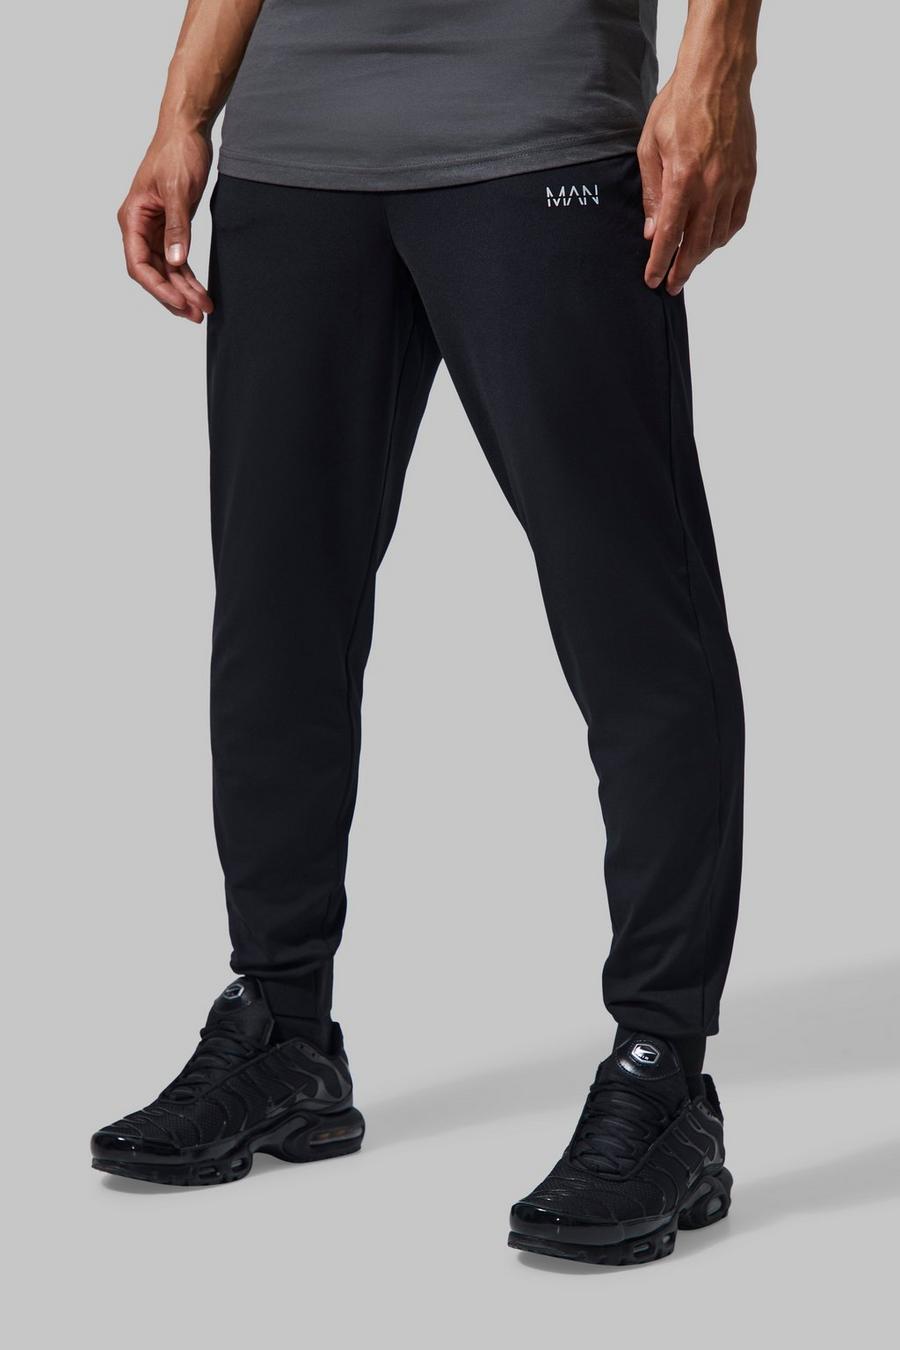 Pantalón deportivo MAN Active para el gimnasio con cintura fija, Black nero image number 1